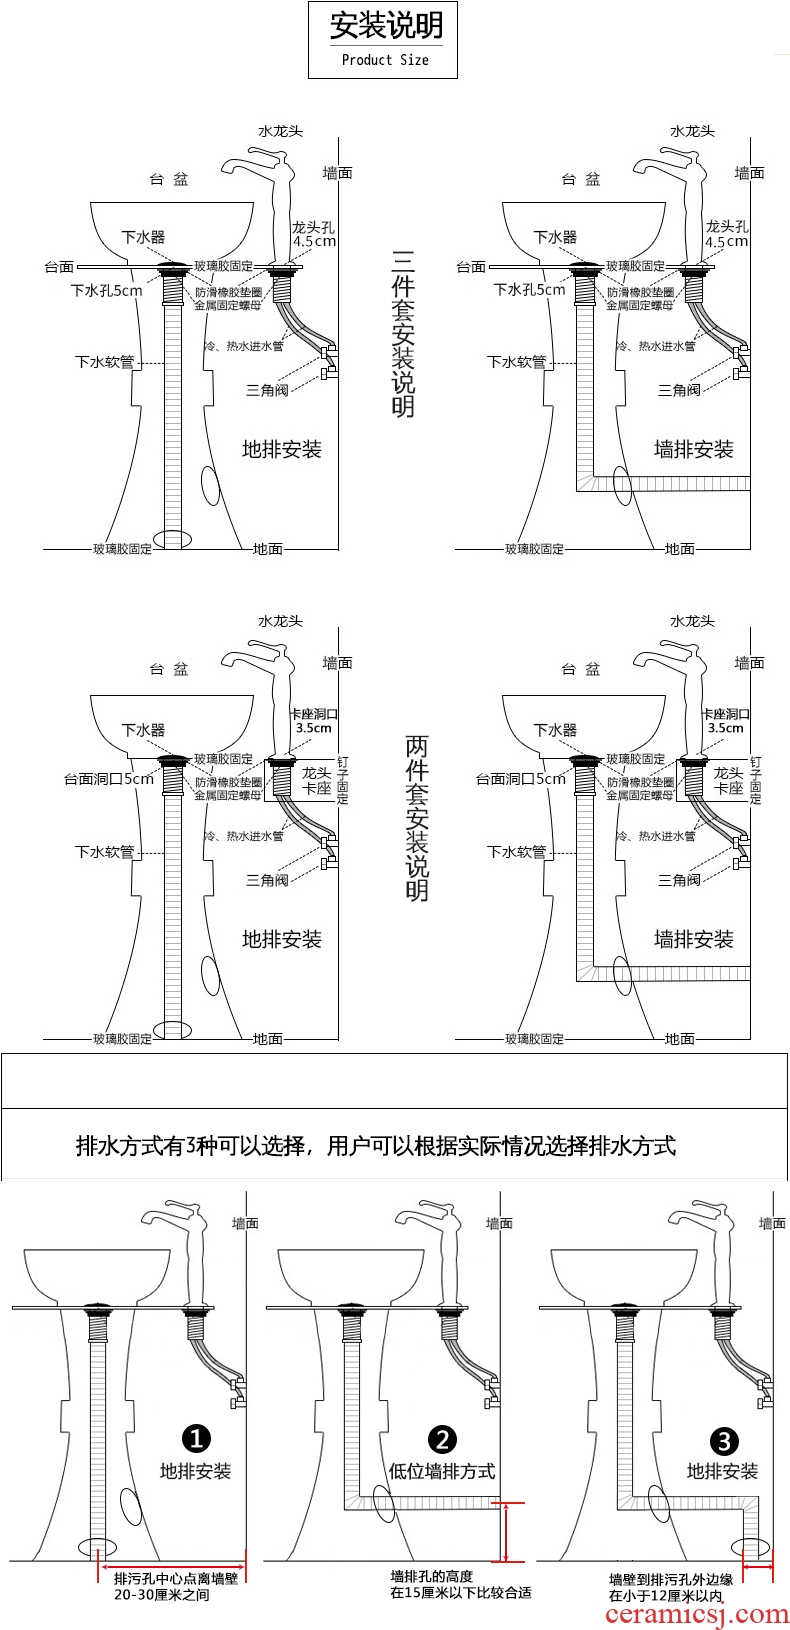 JingWei lavatory basin of pillar lavabo balcony sink sink basin one column basin ceramic face basin